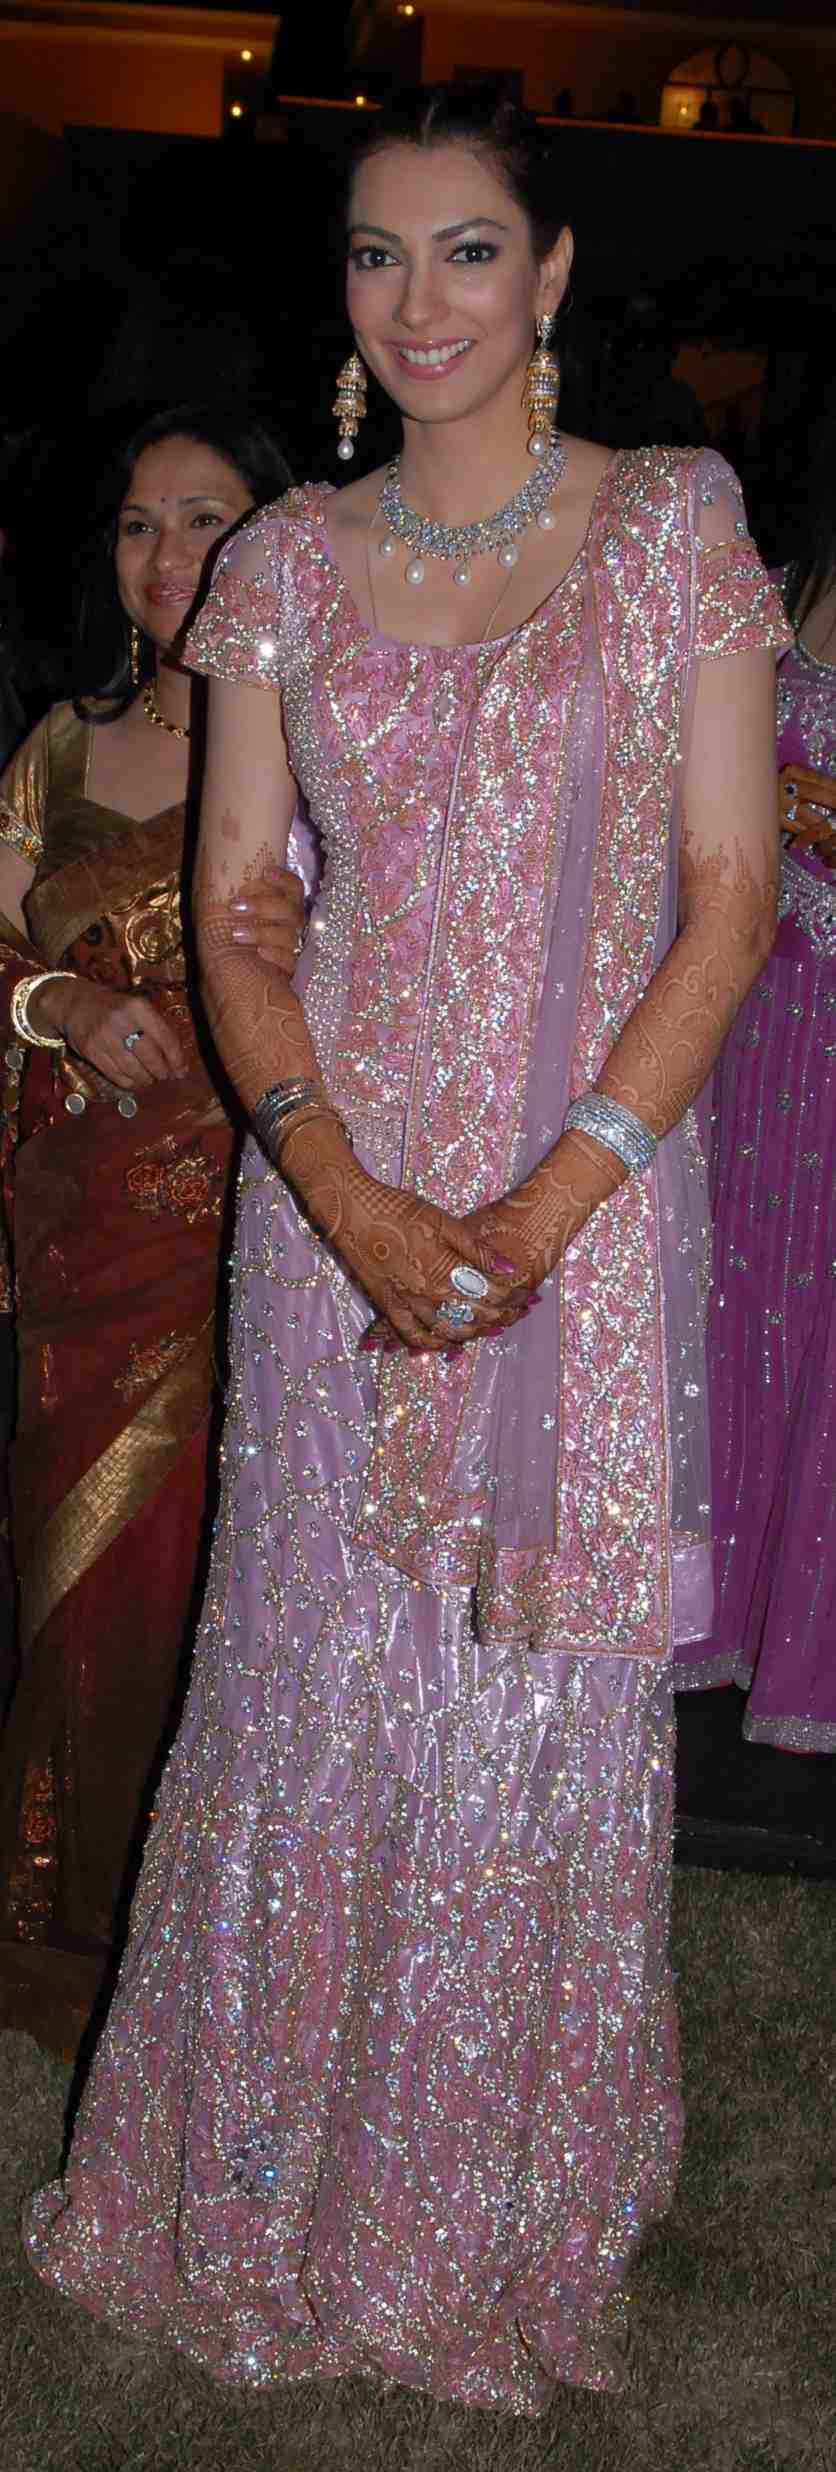 Yukta Mookhey in her wedding Dress on 8th November 2008